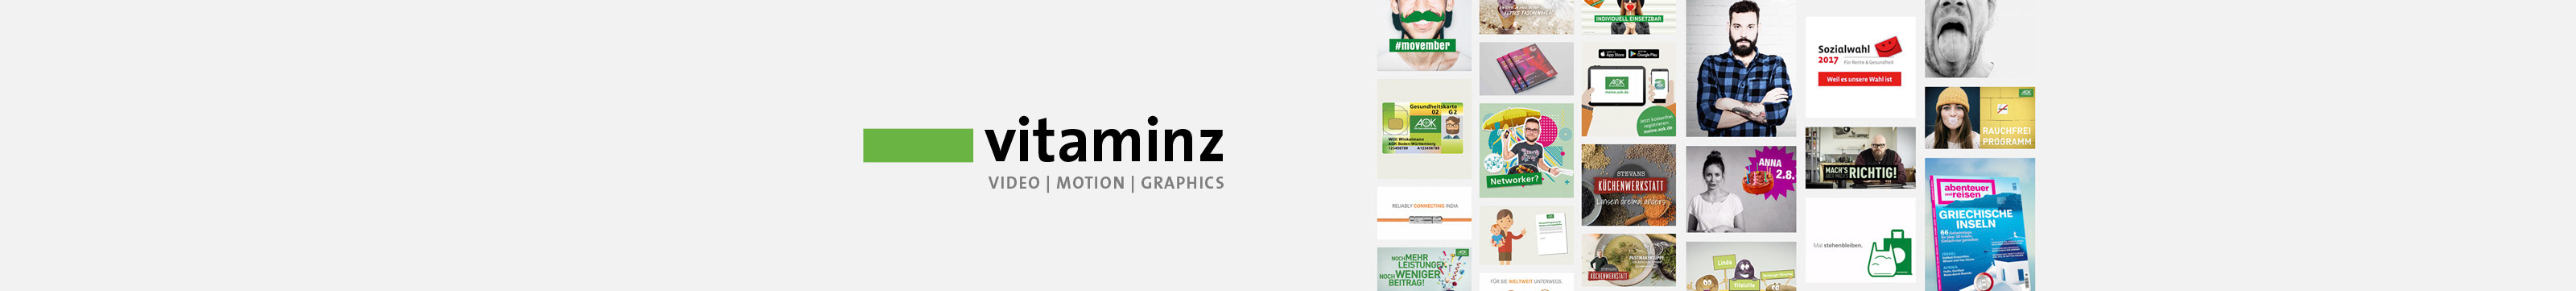 vitaminz design's profile banner